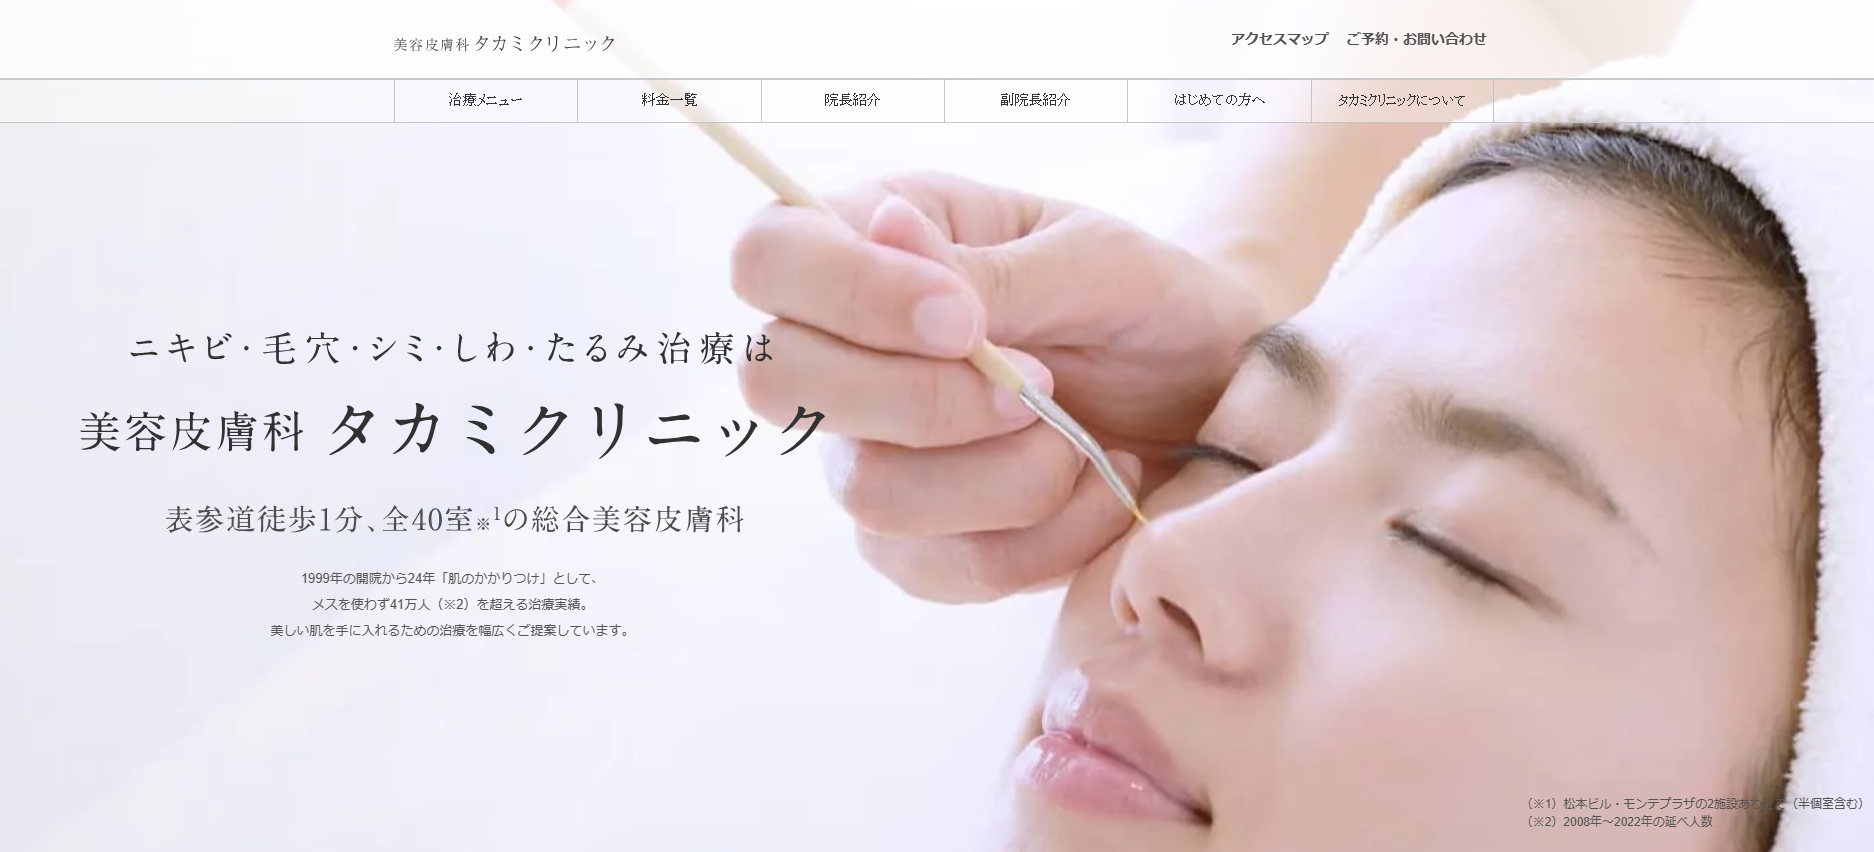 東京都で評判のクマ取りにおすすめのクリニック10選 美容皮膚科 タカミクリニック